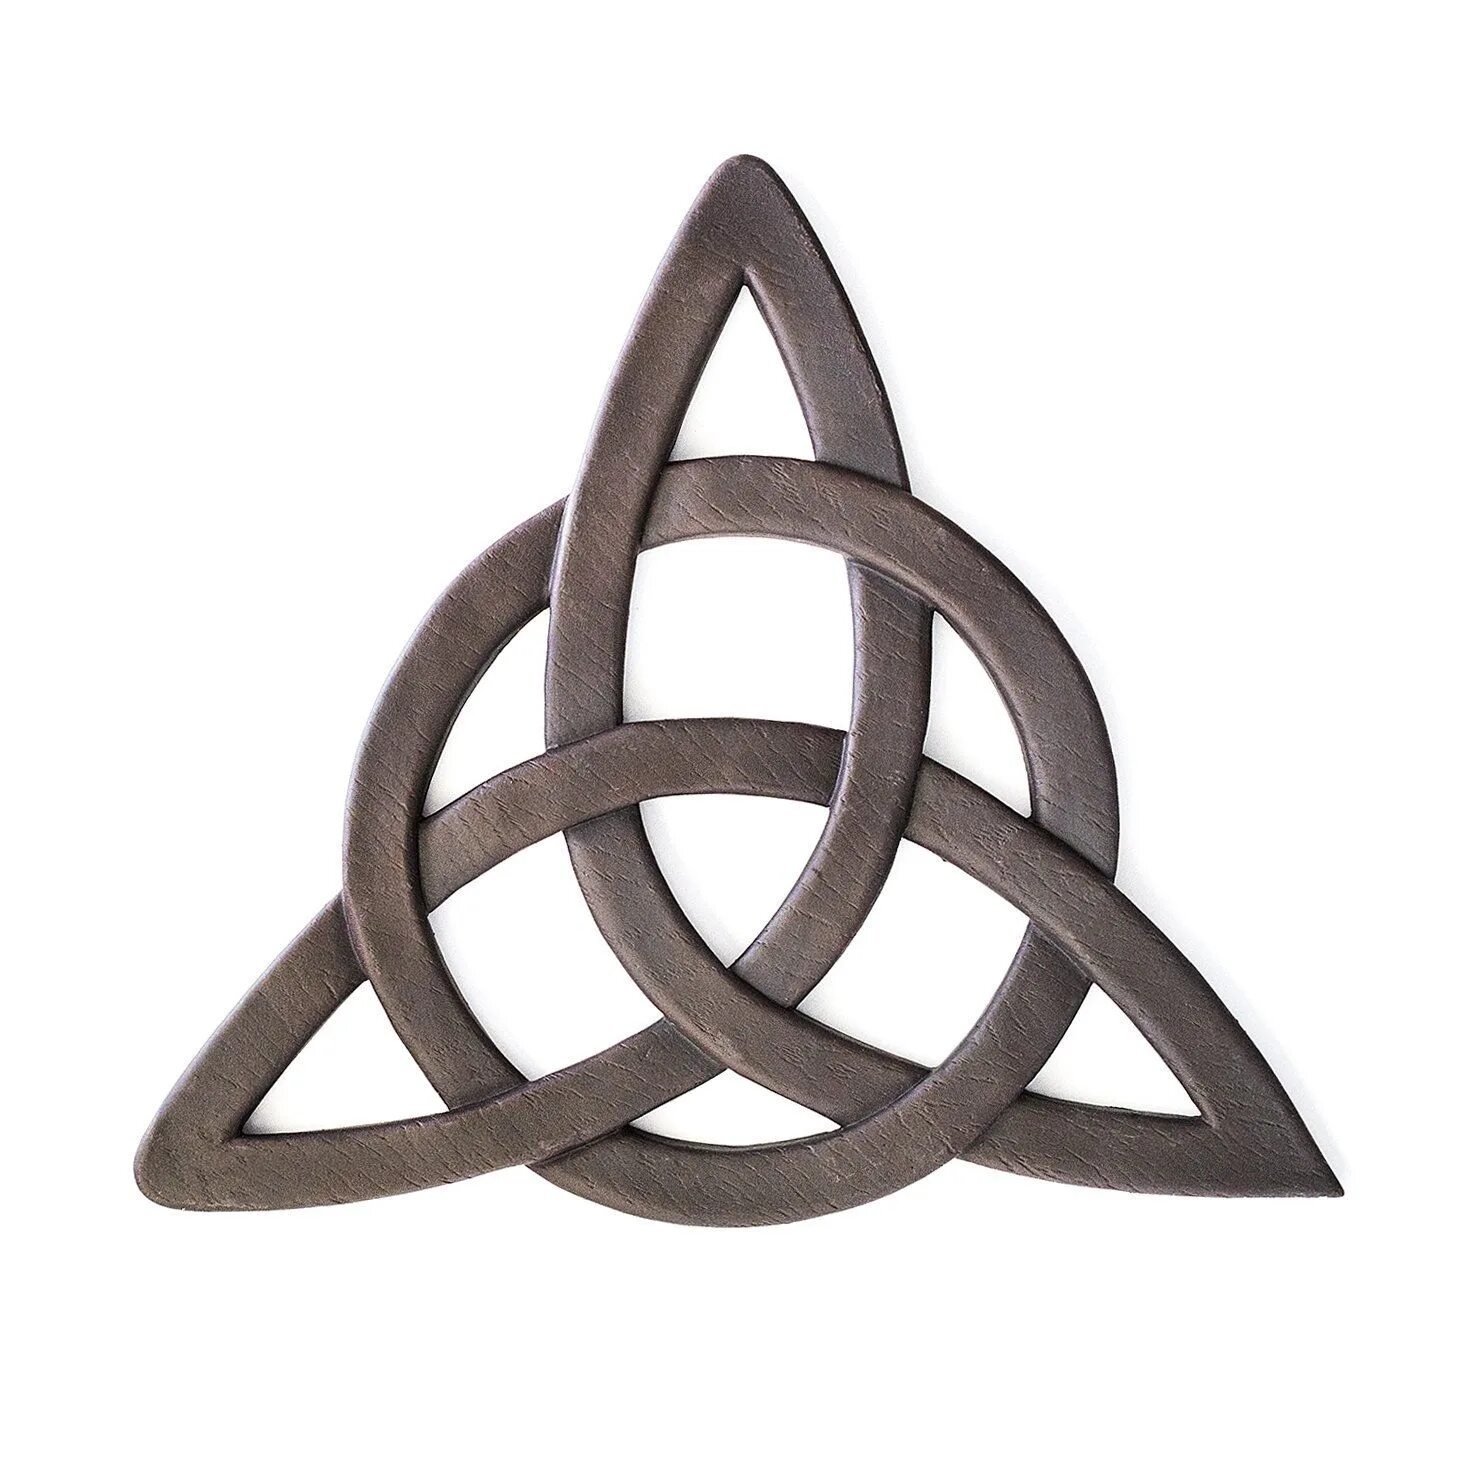 Трикветр (Триквестр или Трикветра). Триглав трикветр. Кельтский трикветр символ. Кельтский узел трикветр.